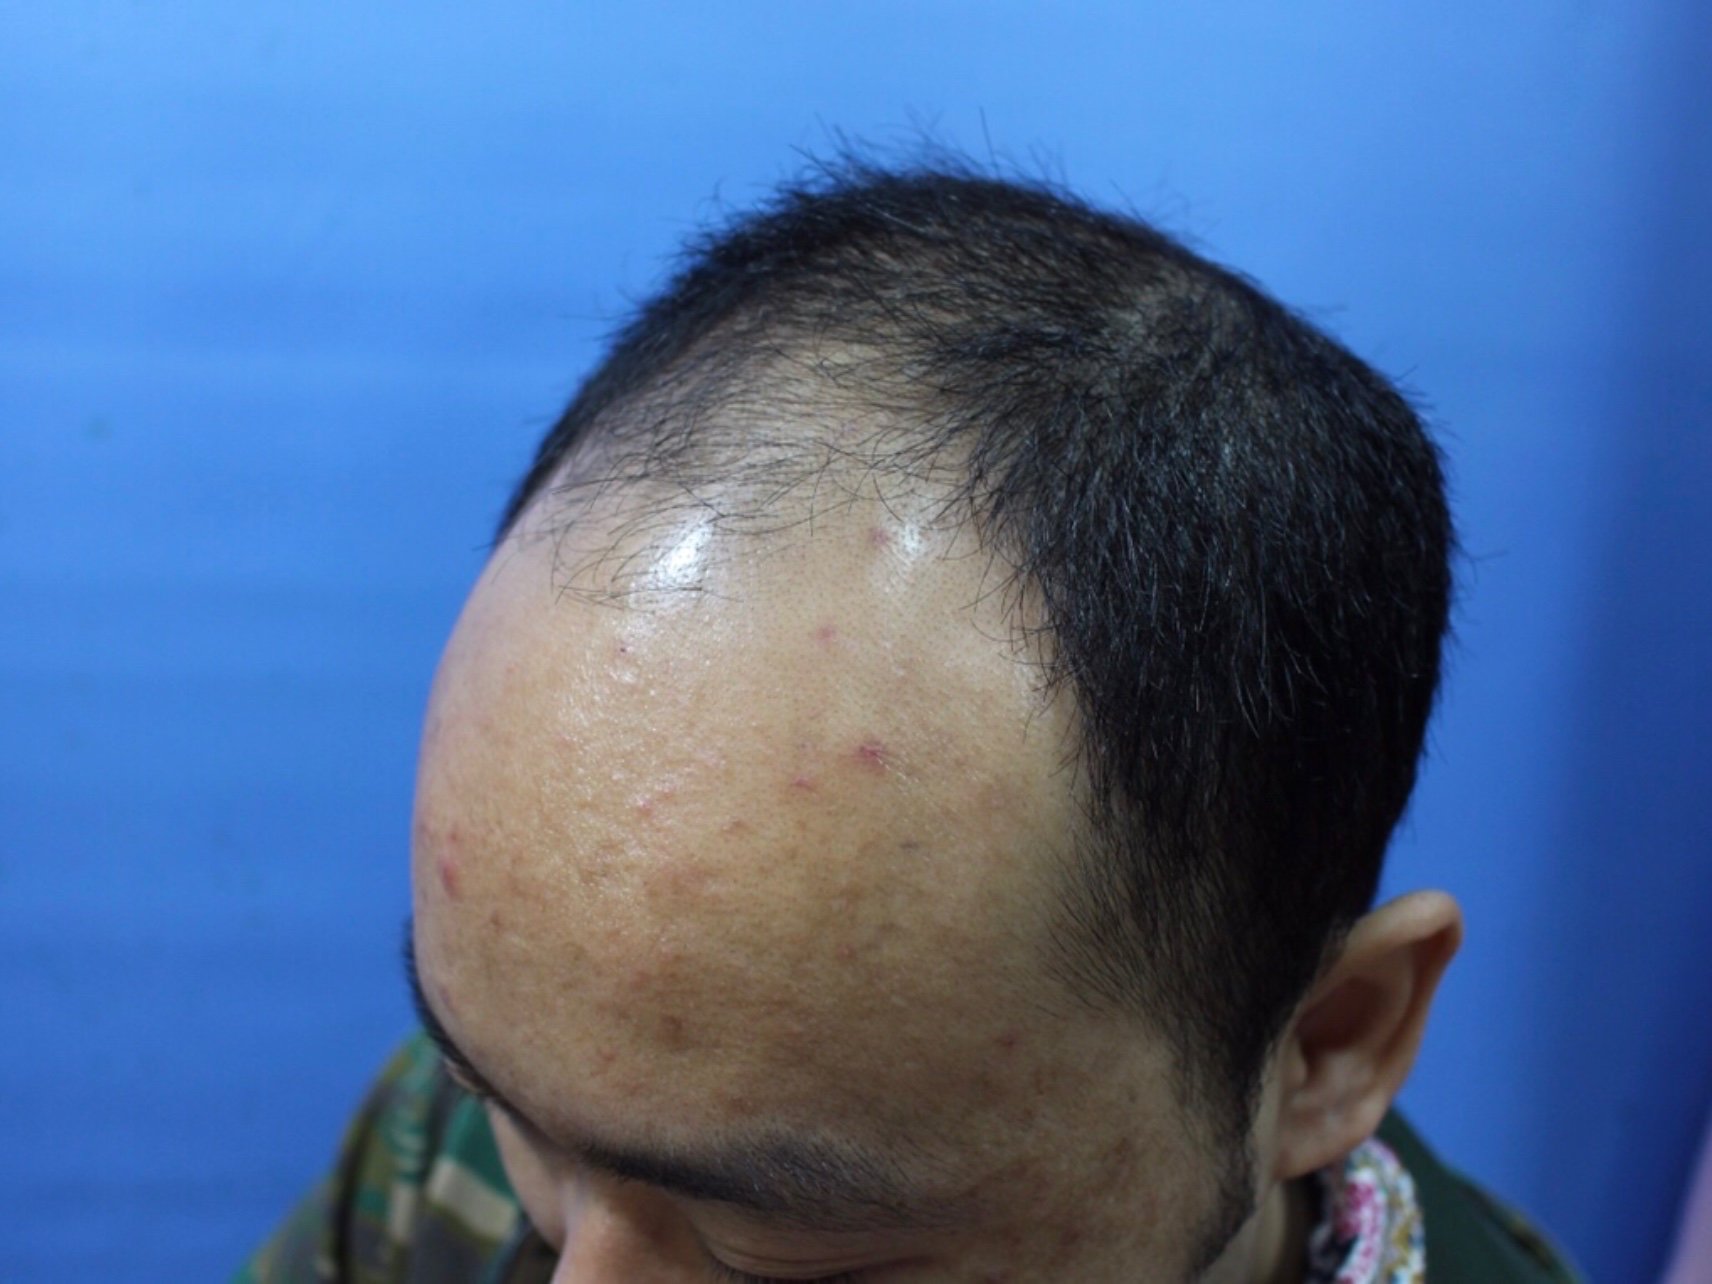 斑秃,俗称鬼剃头, 是一种比较特殊的脱发,患者头顶突然出现圆形或